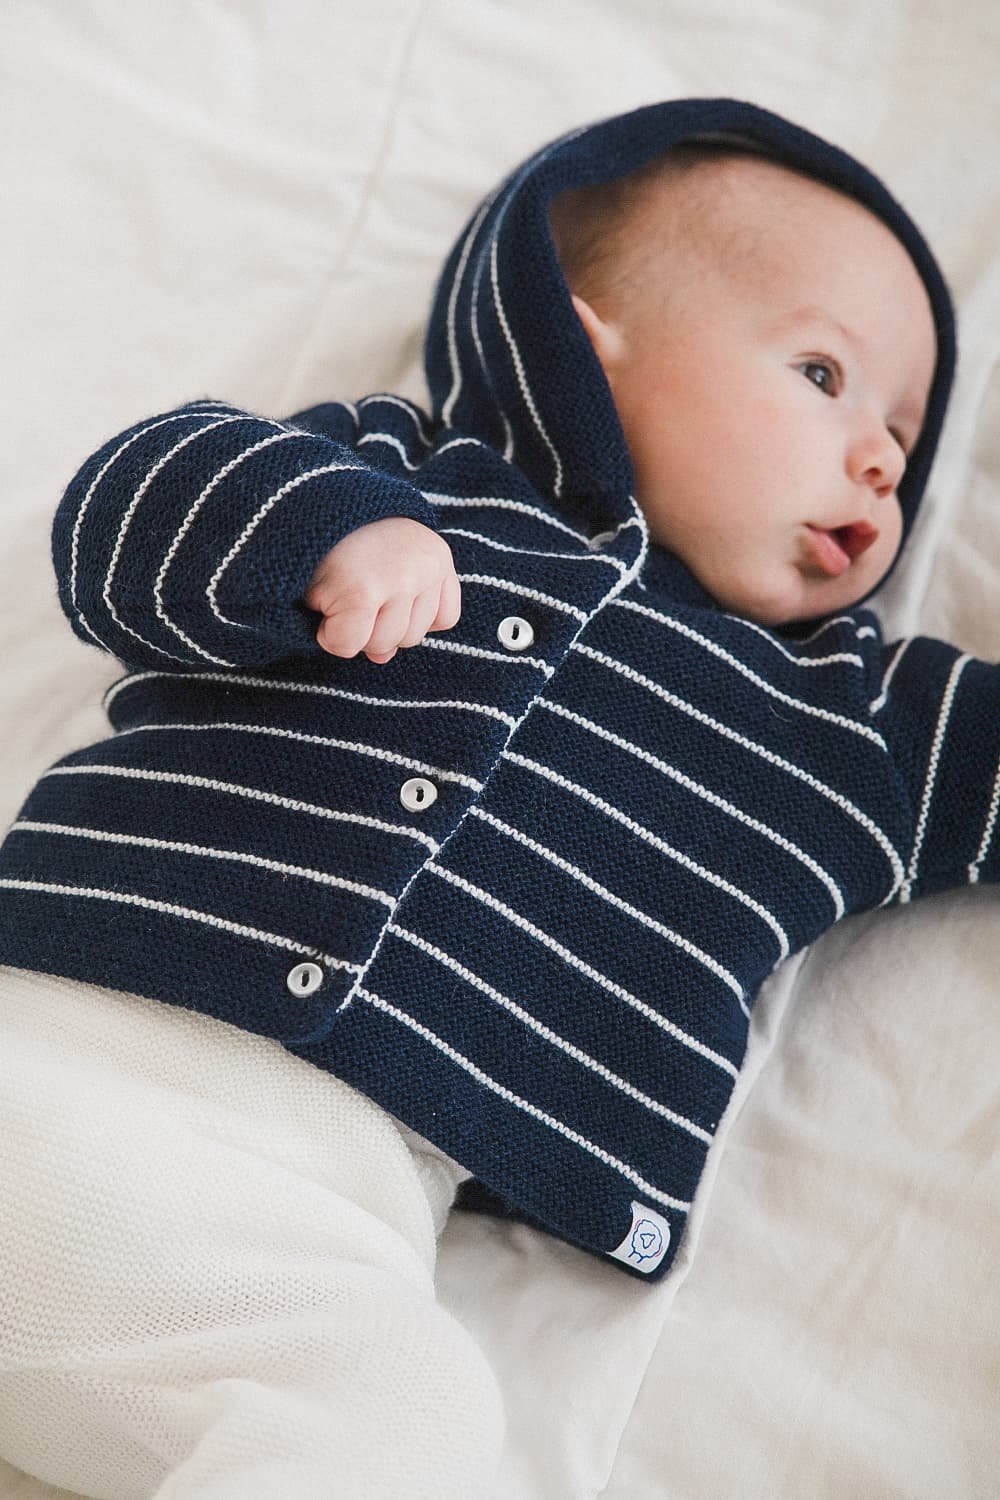 Comment bien entretenir les vêtements pour bébé ?